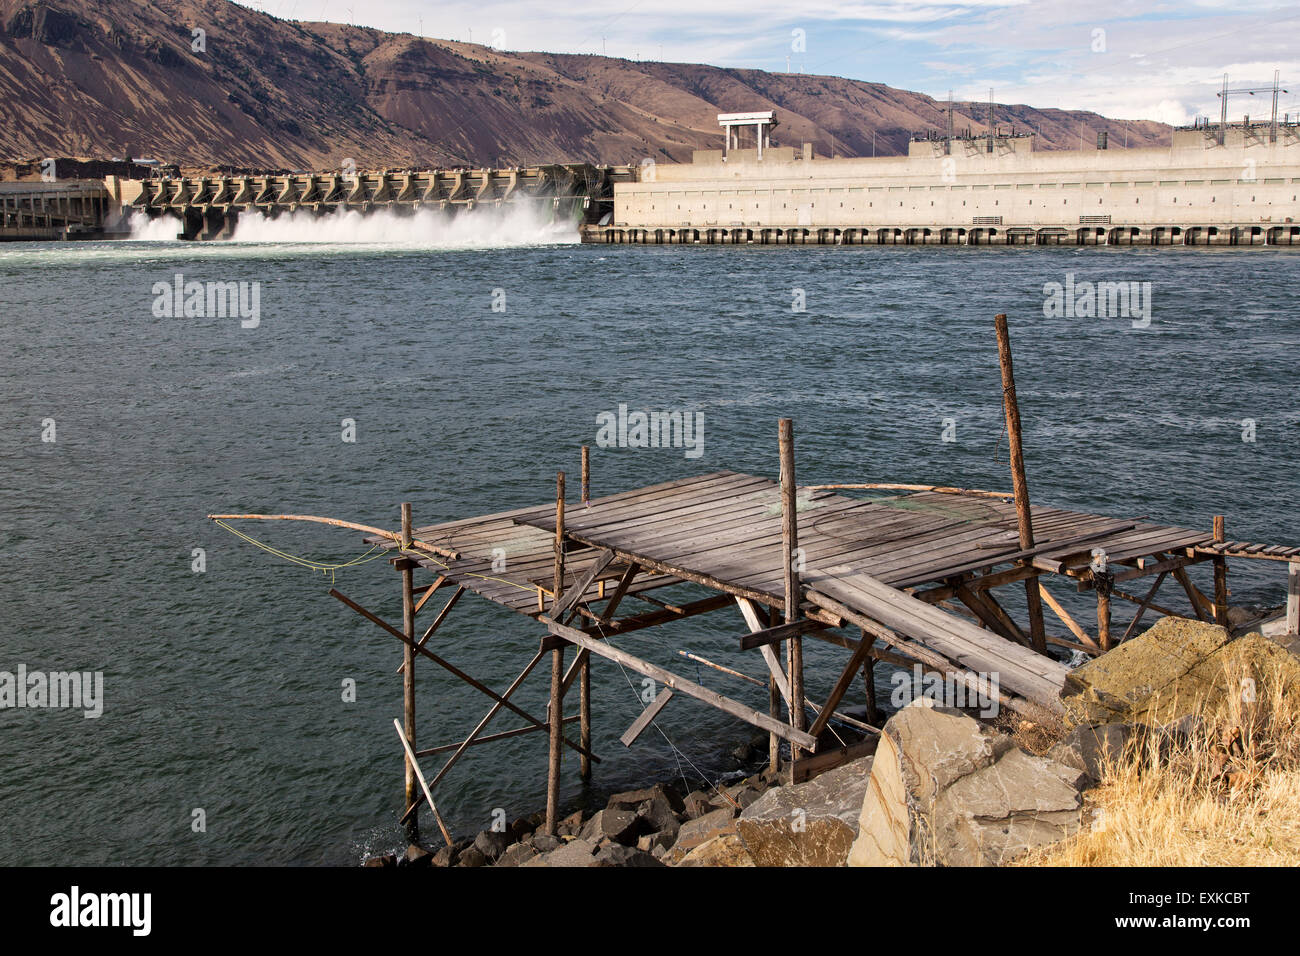 La plate-forme de pêche autochtones américains, John jour barrage sur le fleuve Columbia. Banque D'Images